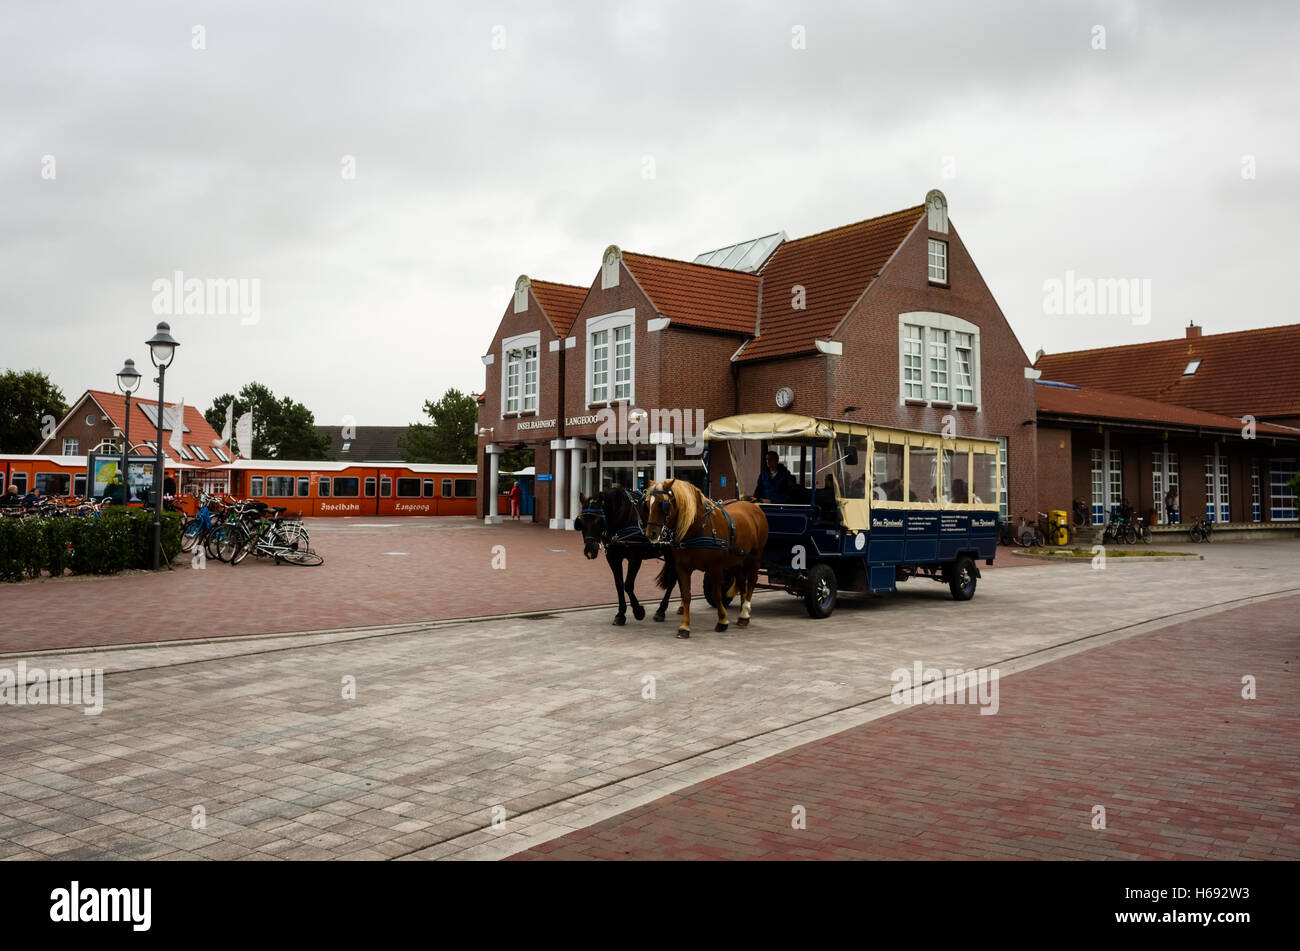 Inselbahnhof Langeoog. Deutschland Deutschland. Eine von Pferden gezogene taxi Beförderung ausserhalb Langeoog Bahnhof für die nächste Gruppe von Urlaubern auf der Insel ankommen, wartet. Es ist ein bewölkter Tag im Herbst. Stockfoto